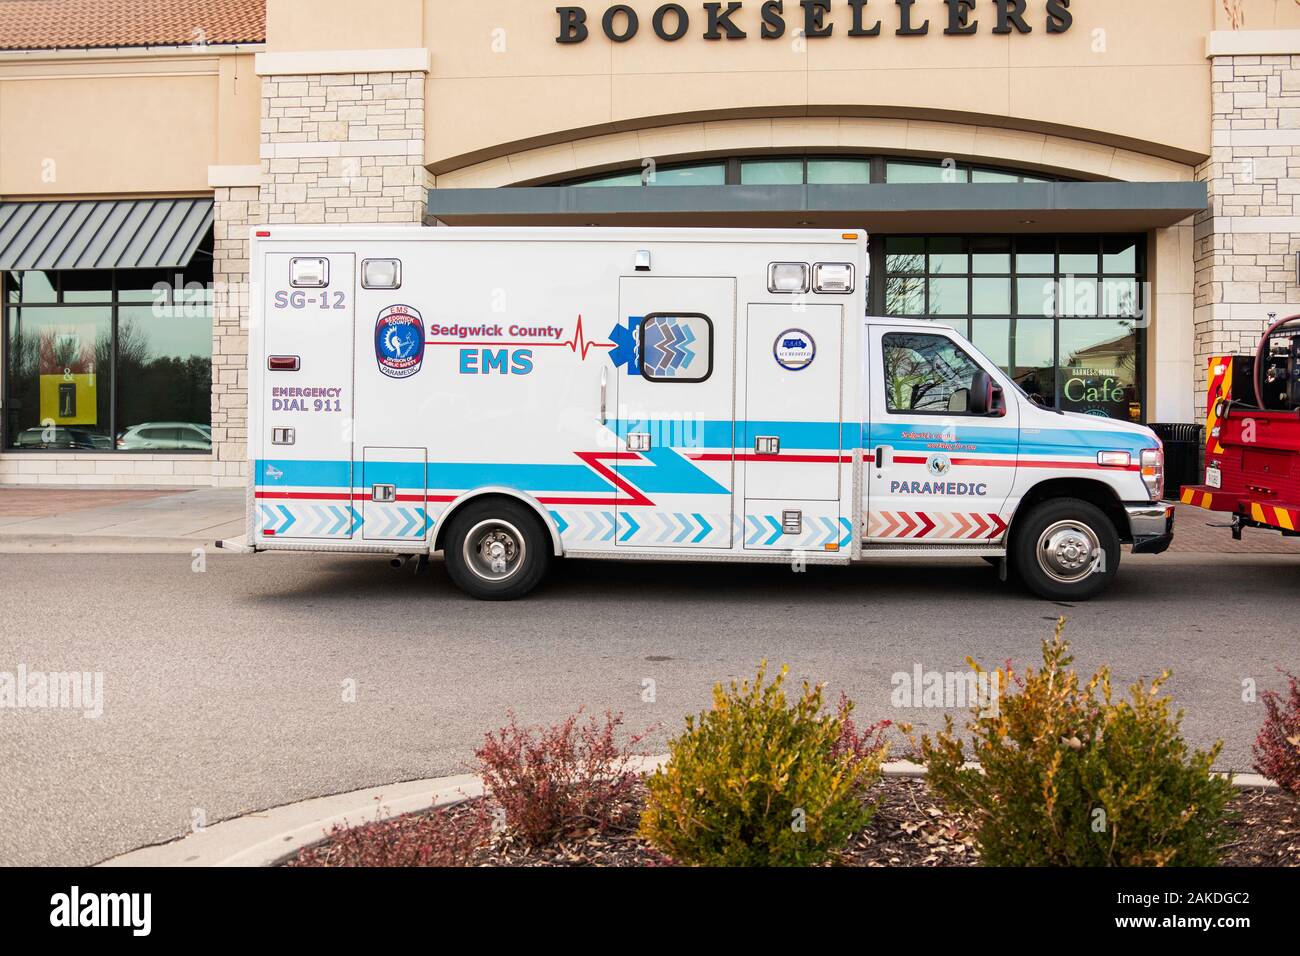 Ambulance EMS sur appel alors qu'il était stationné en face de Barnes & Noble booksellers storefront dans Bradley Fair Shopping Centre, Wichita, Kansas, États-Unis. Banque D'Images